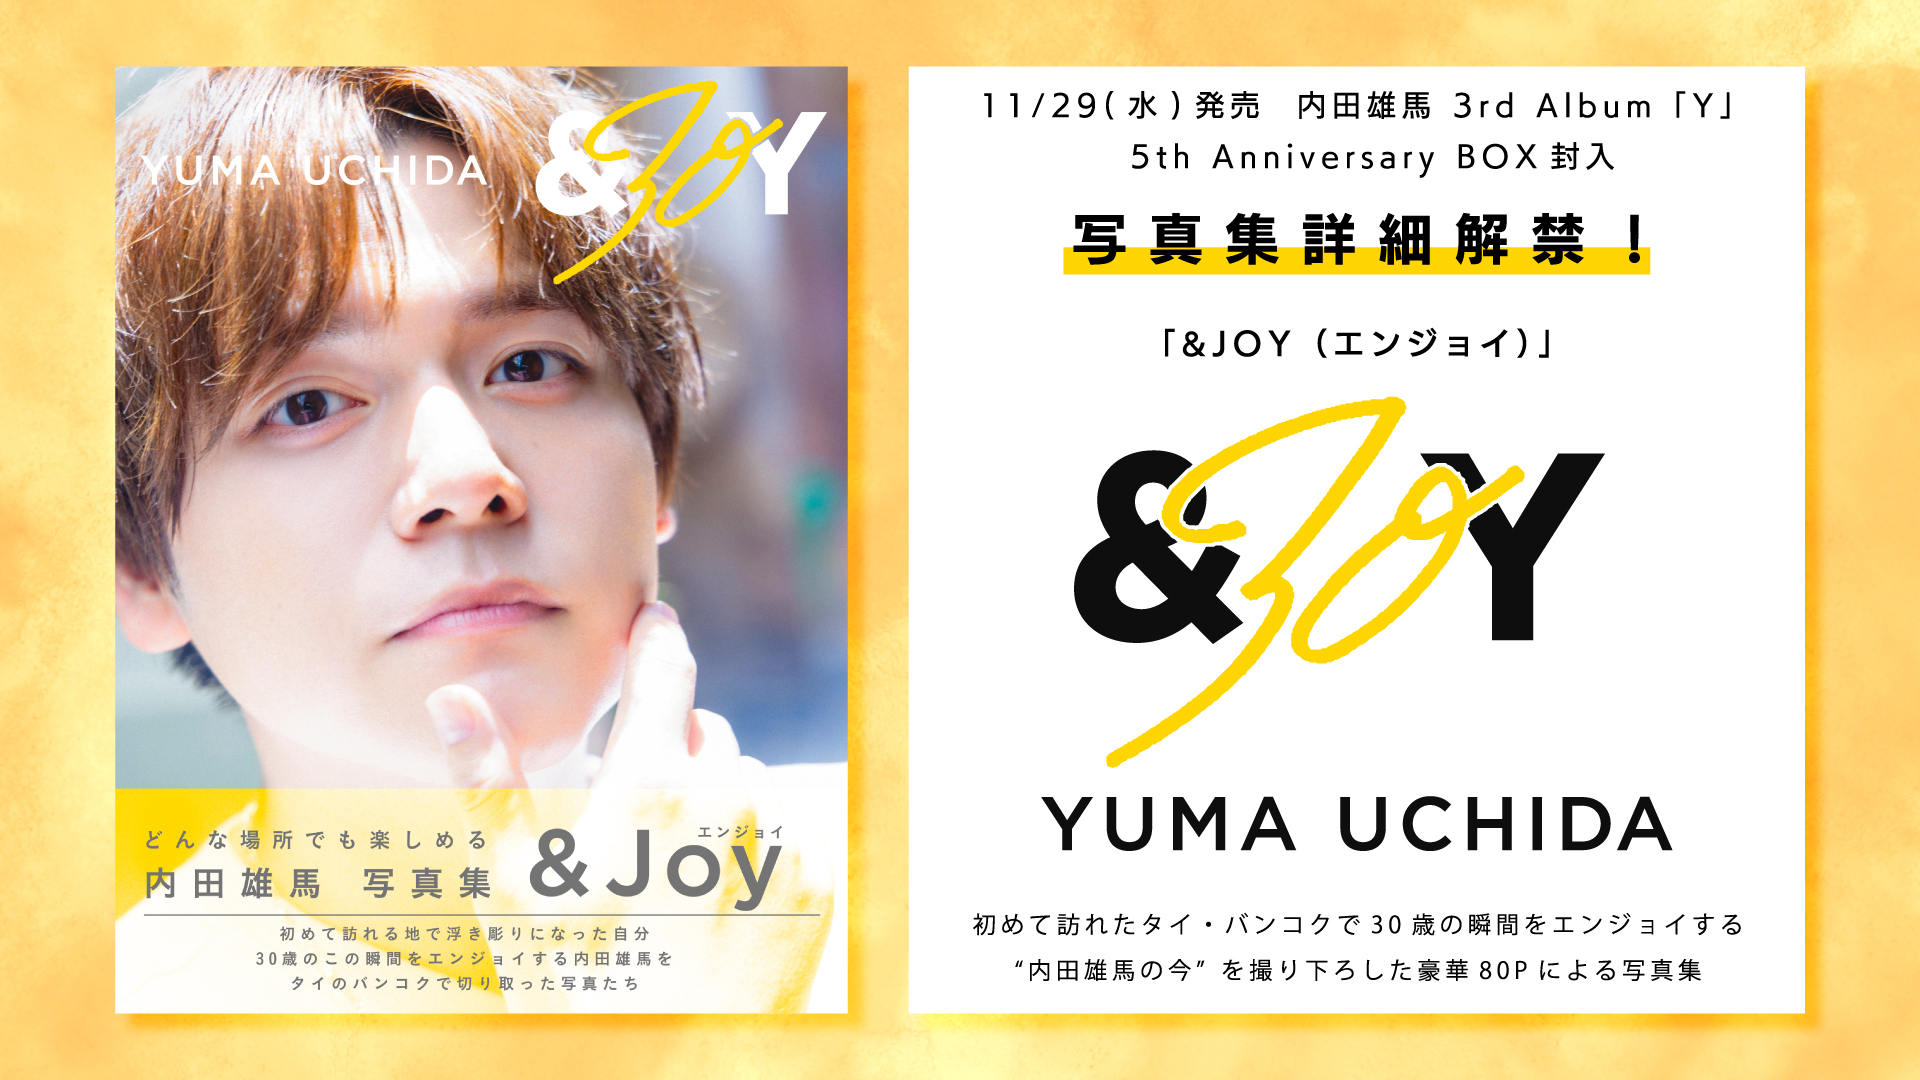 内田雄馬 11/29発売 3rd Album『Y』 5th Anniversary BOX封入 写真集 